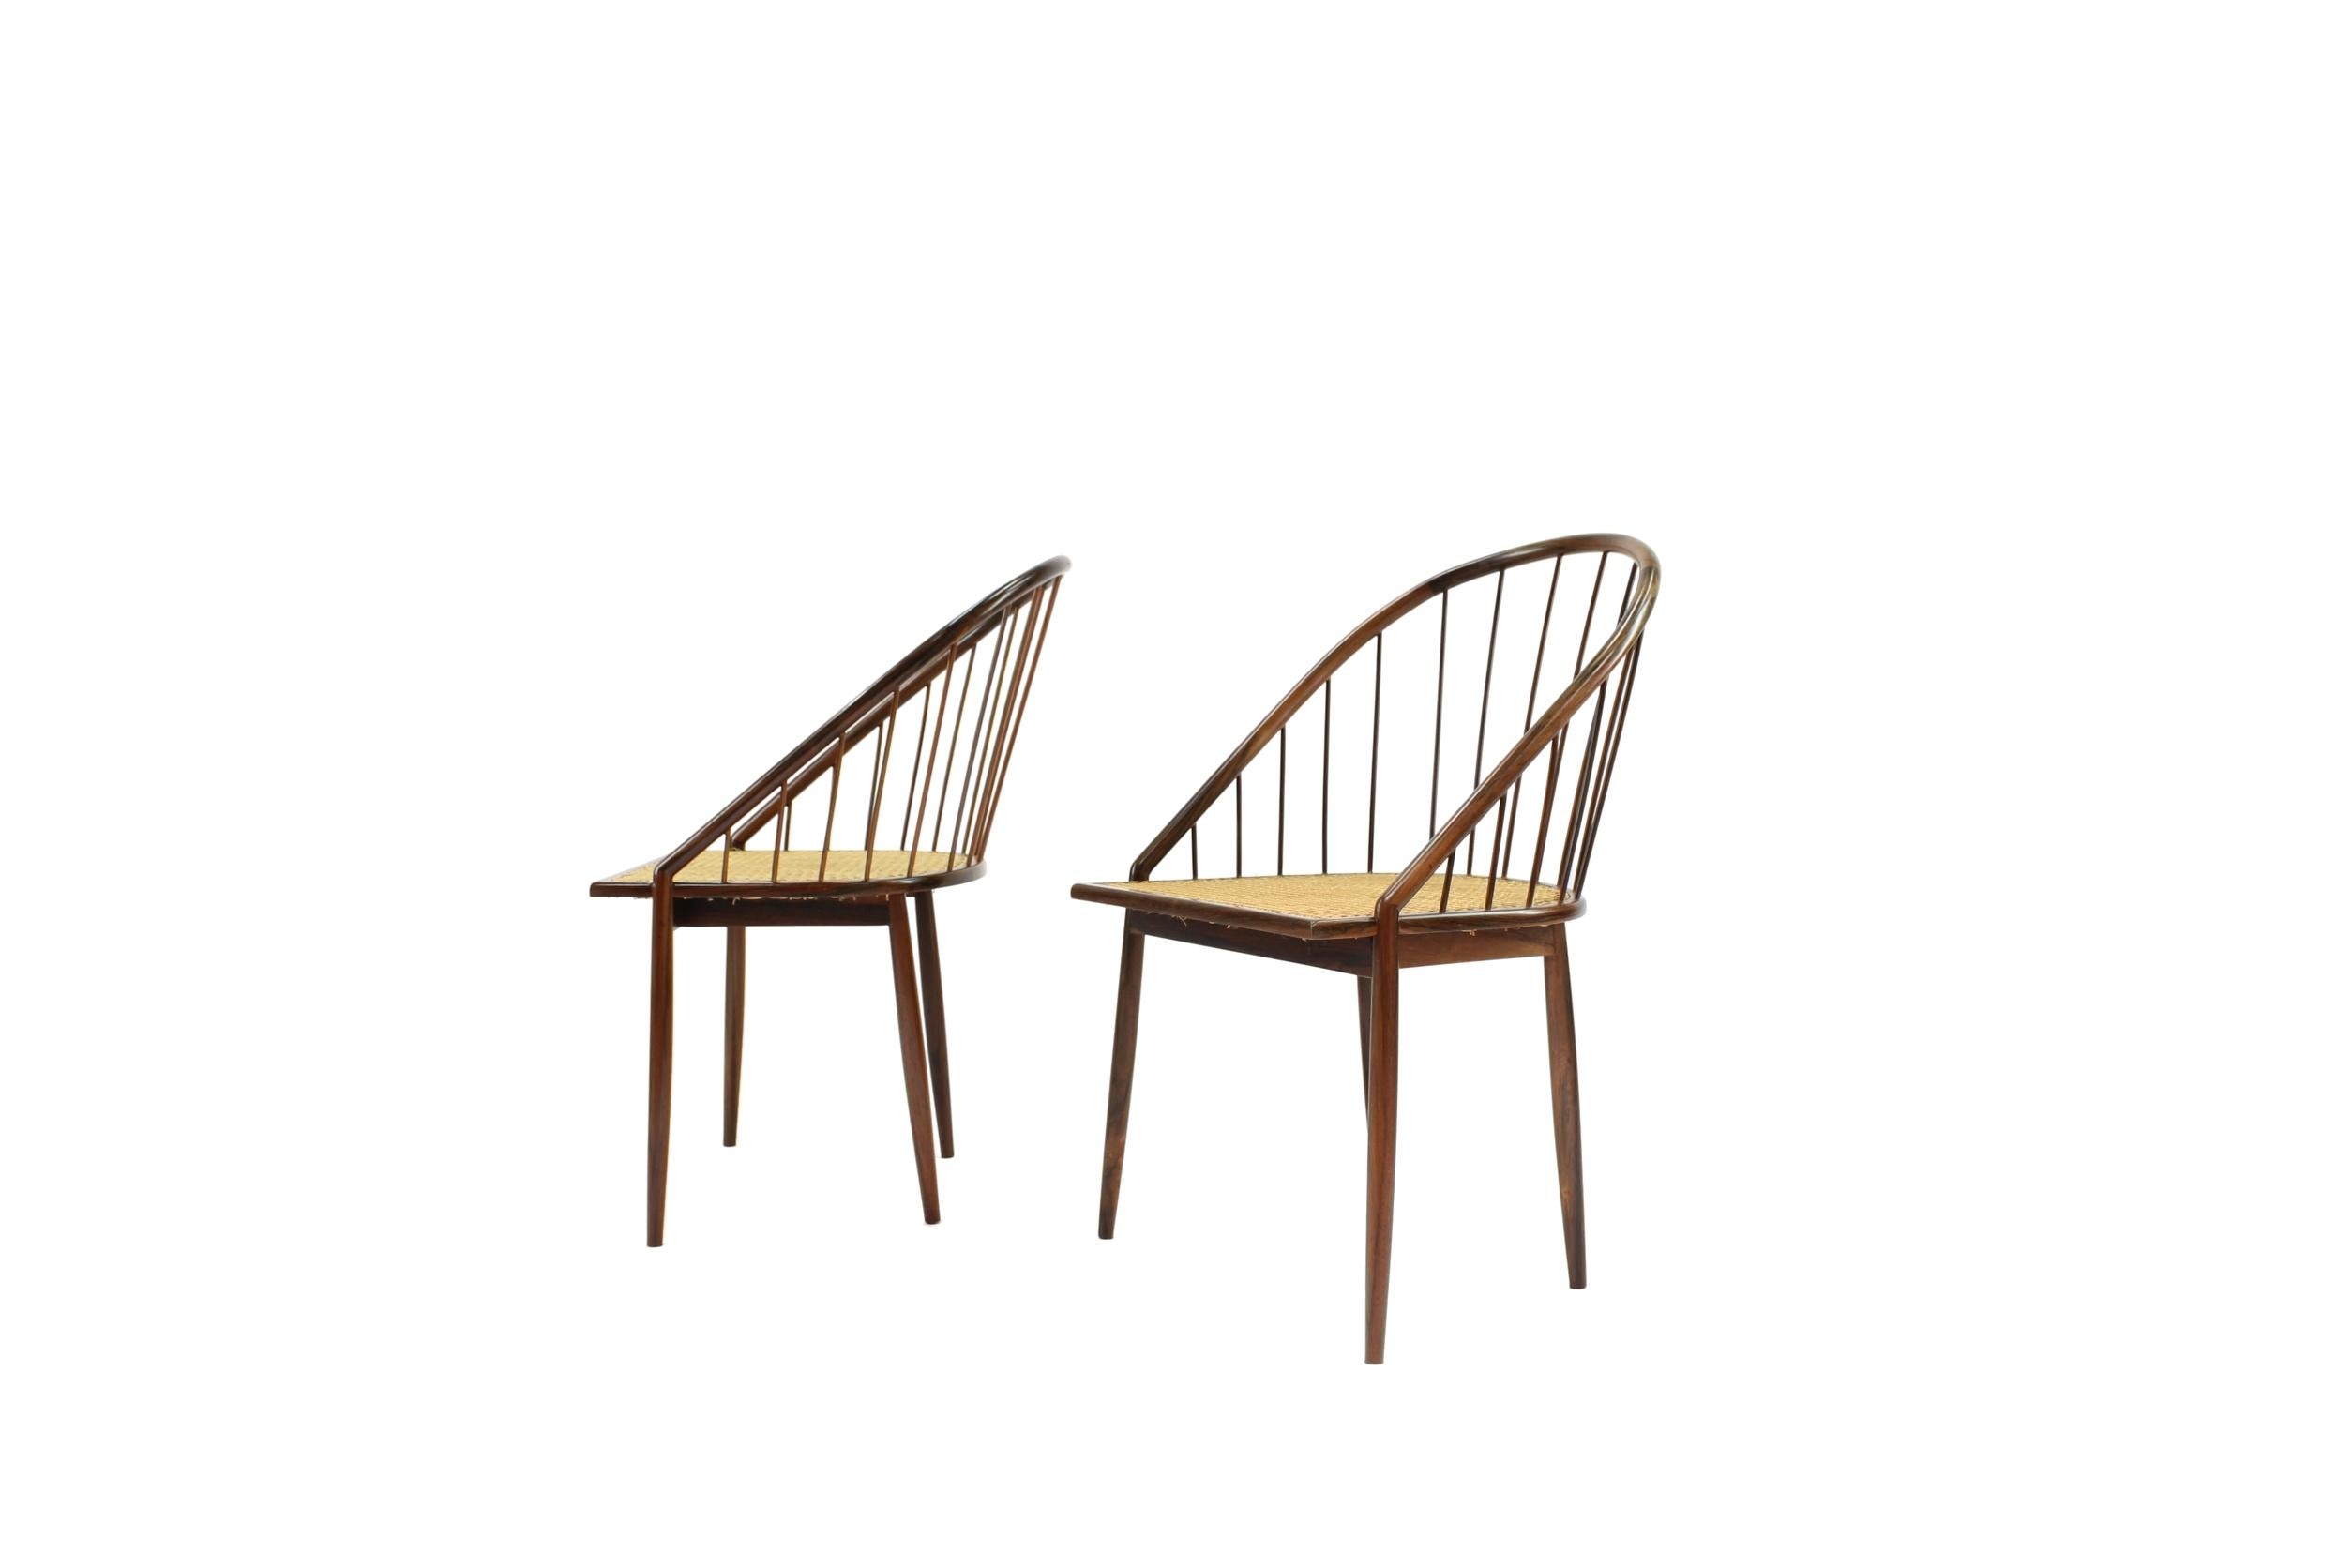 Voici les exquises chaises brésiliennes modernes 